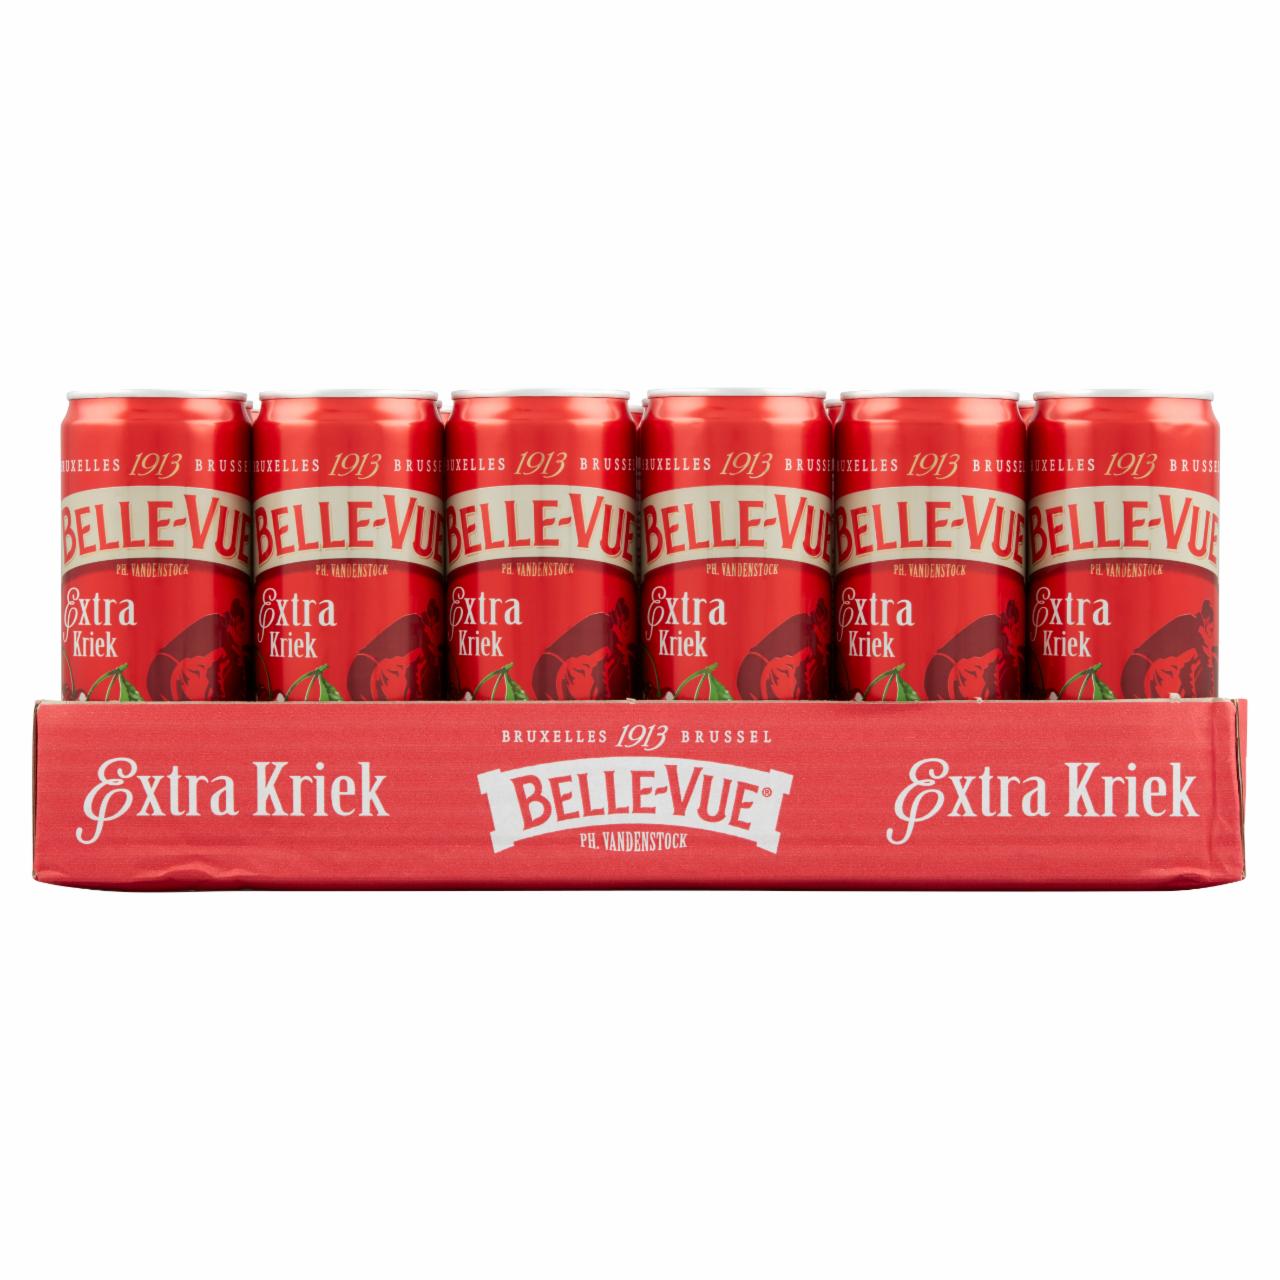 Képek - Belle-Vue Extra Kriek meggyes lambic sör cukorral és édesítőszerrel 4,1% 24 x 0,33 l